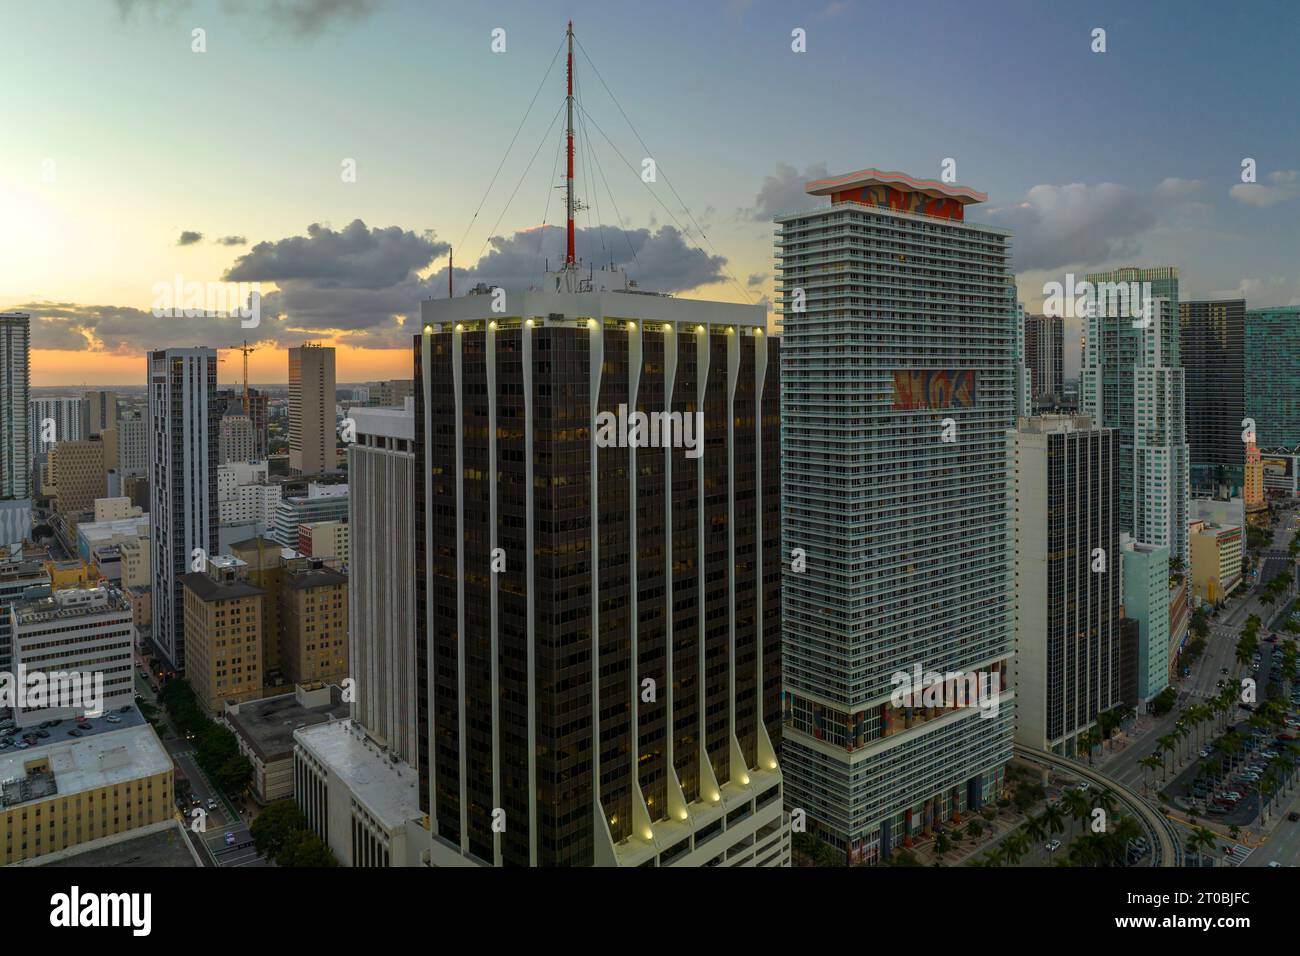 Abendliche Stadtlandschaft im Stadtzentrum von Miami Brickell in Florida, USA. Skyline mit hohen Wolkenkratzergebäuden und städtischem Transportsystem Stockfoto